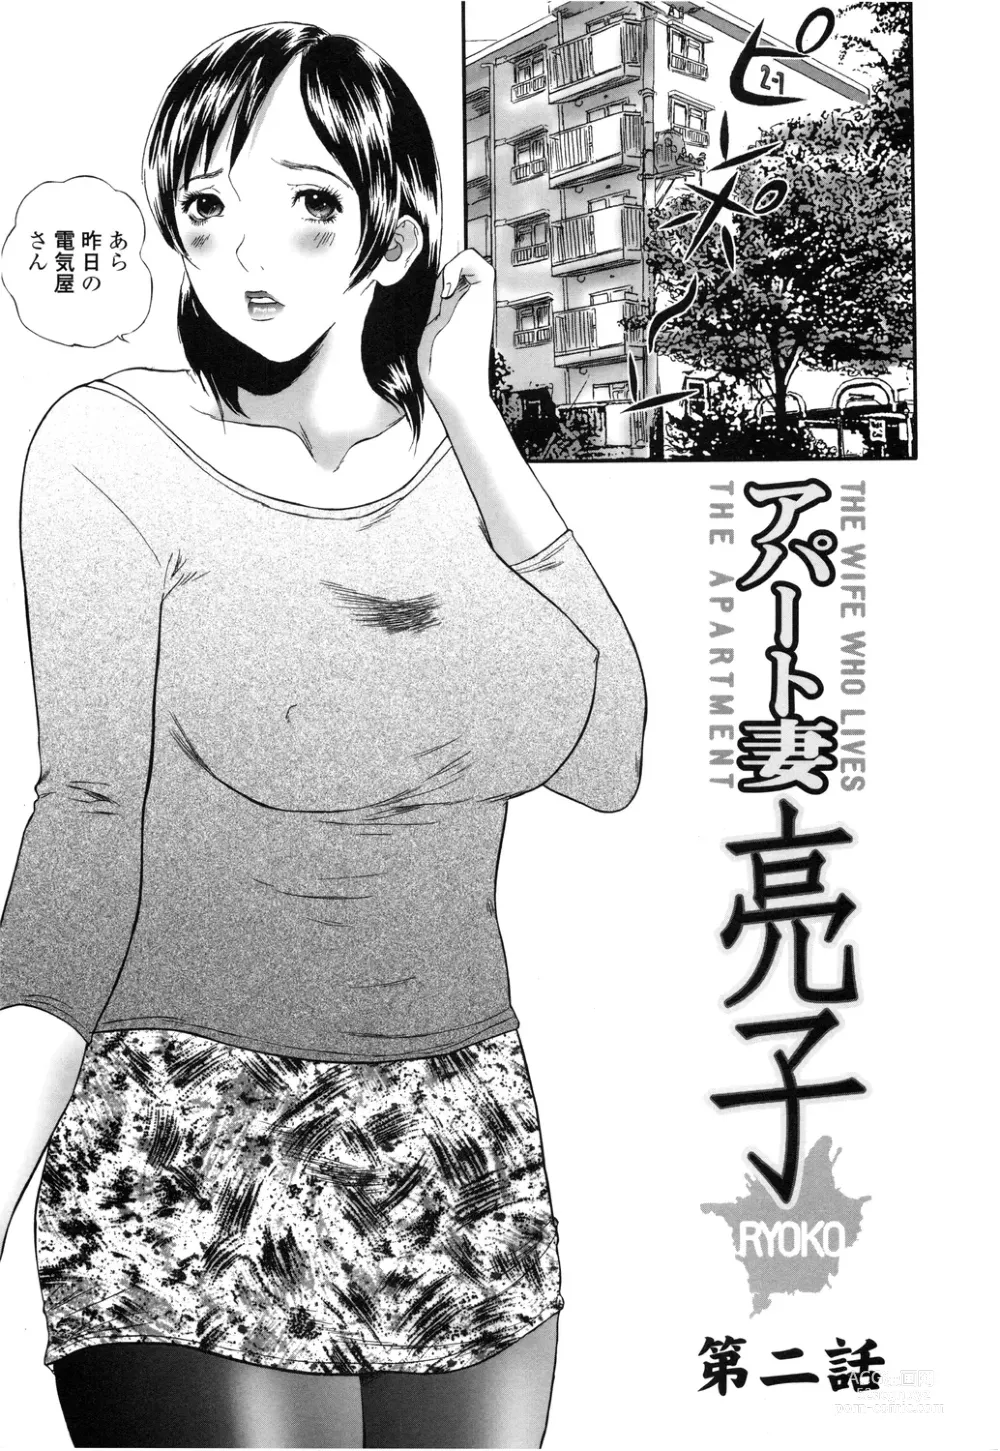 Page 19 of manga Apart zuma Ryouko